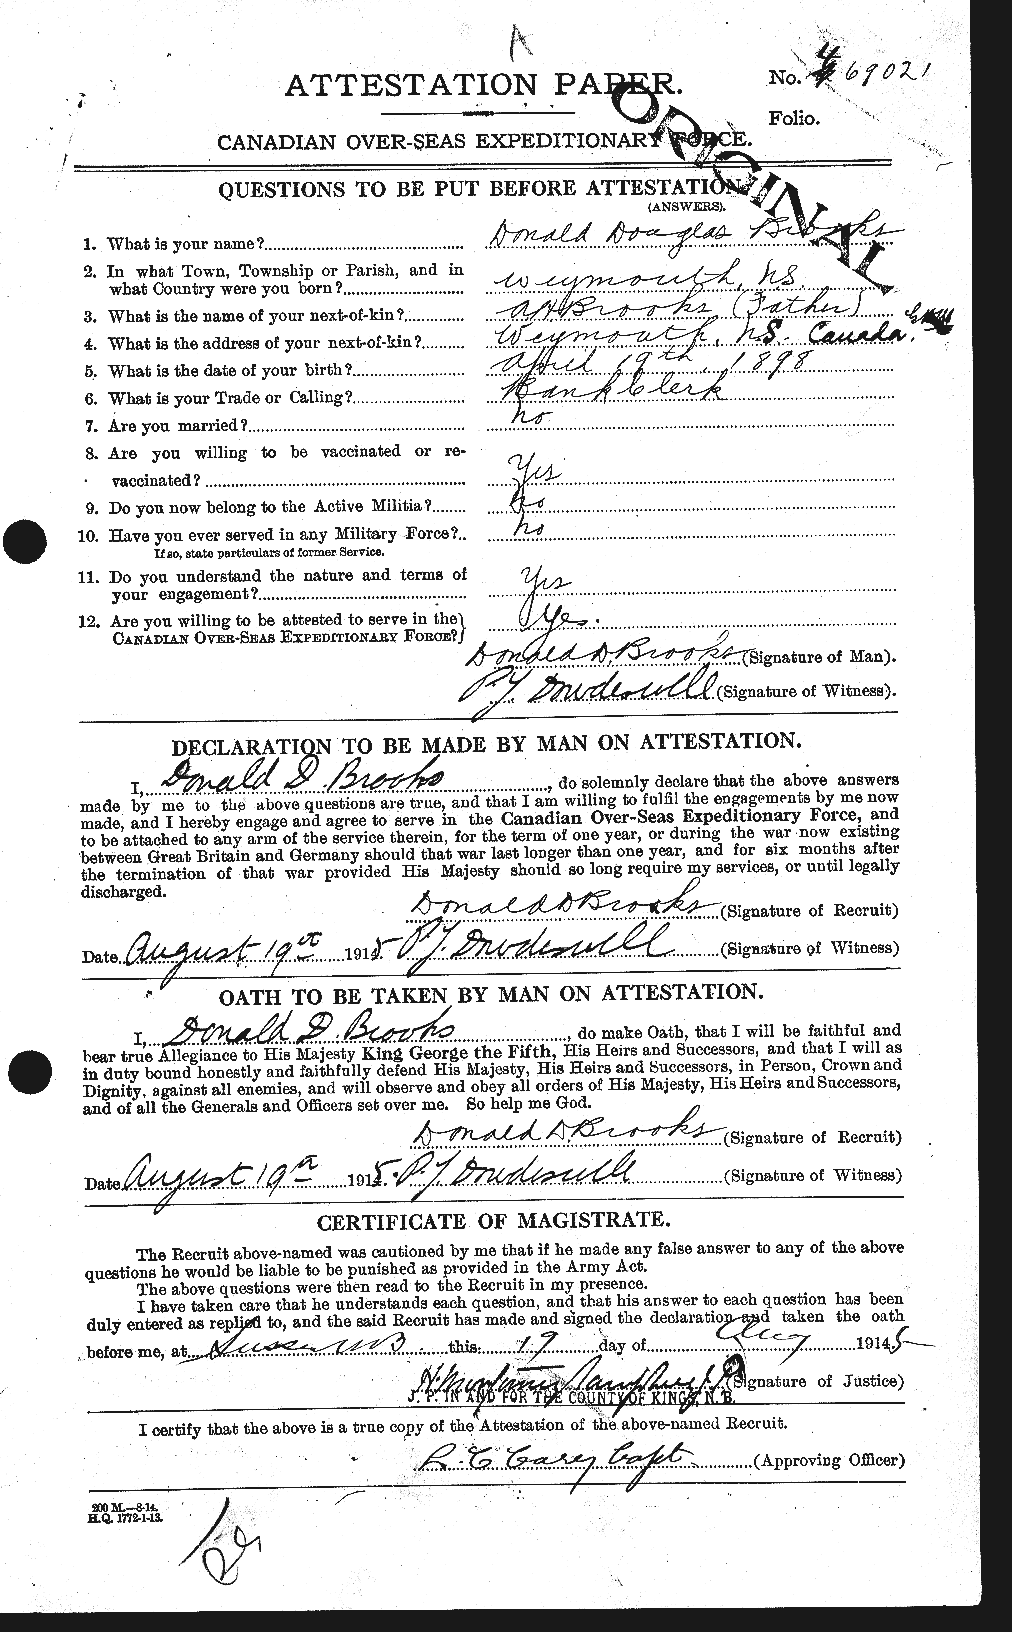 Dossiers du Personnel de la Première Guerre mondiale - CEC 261556a